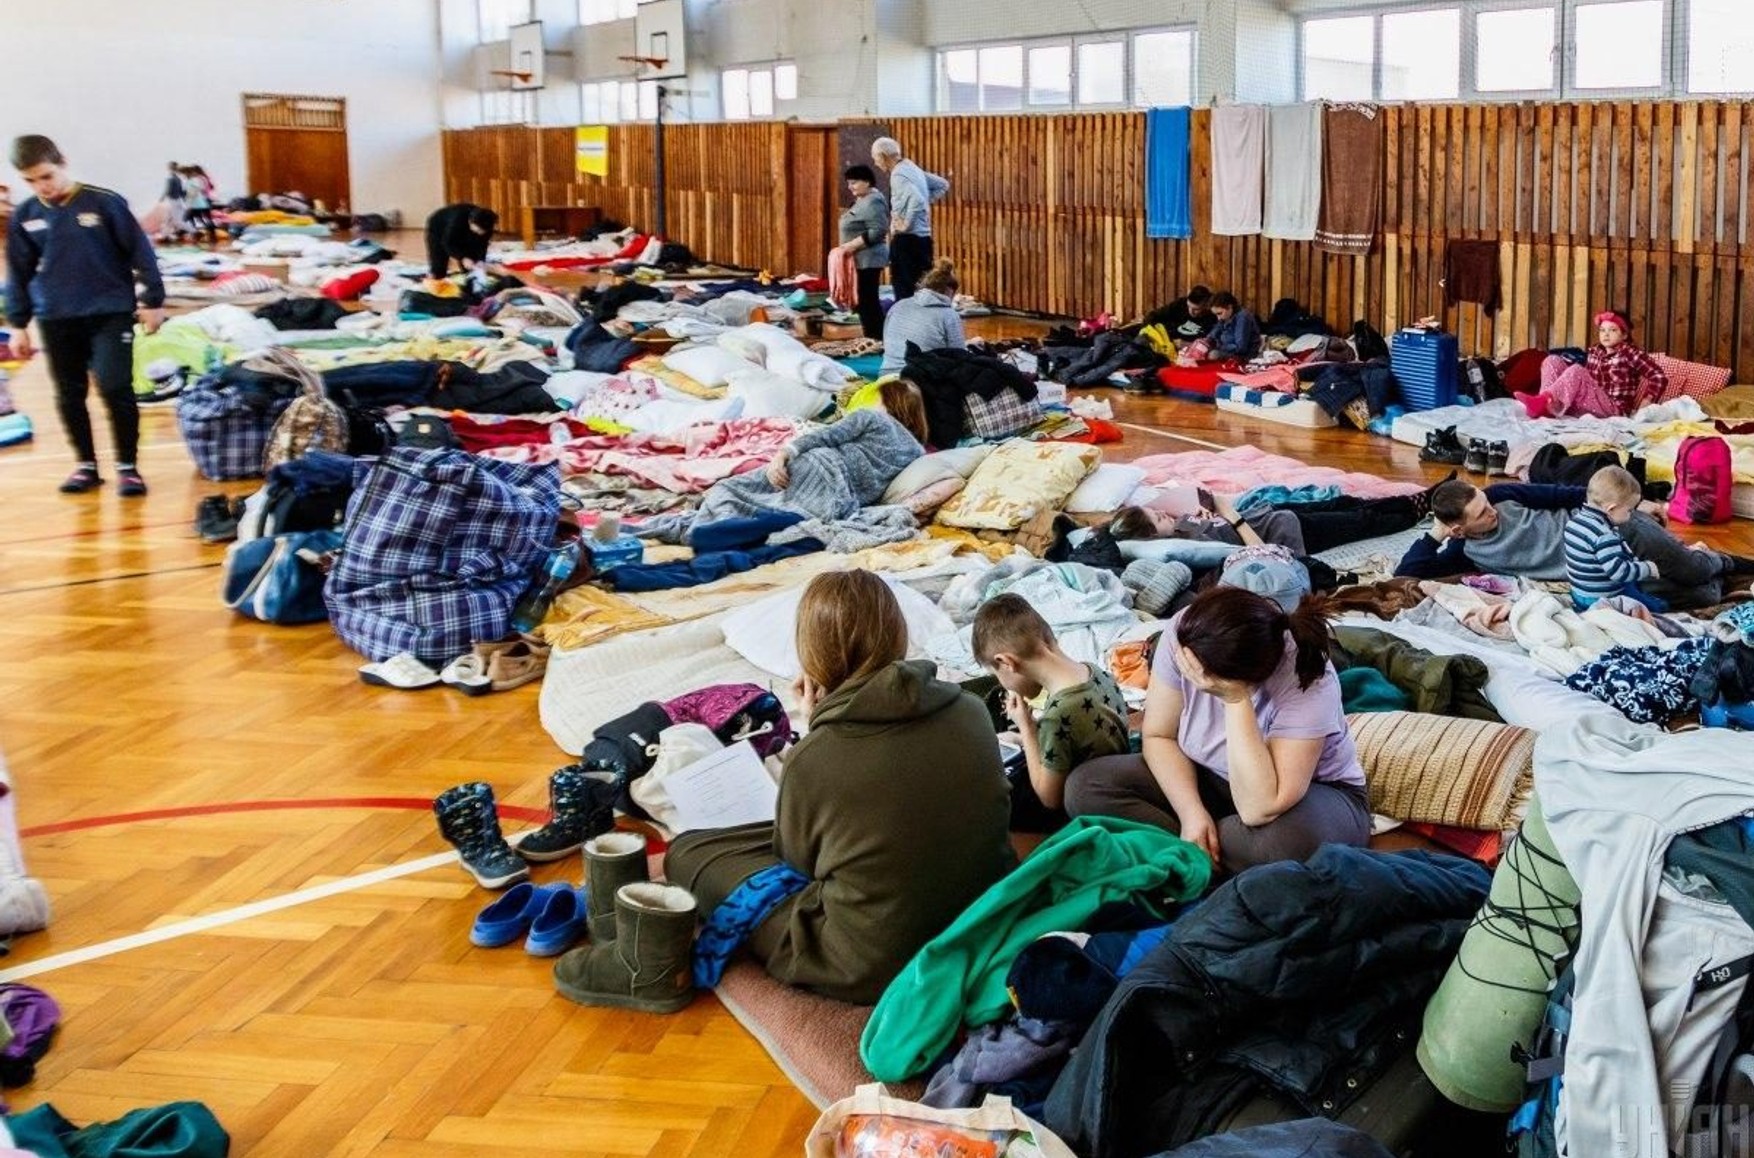 ООН: число вынужденных переселенцев в Украине достигло 8 млн человек